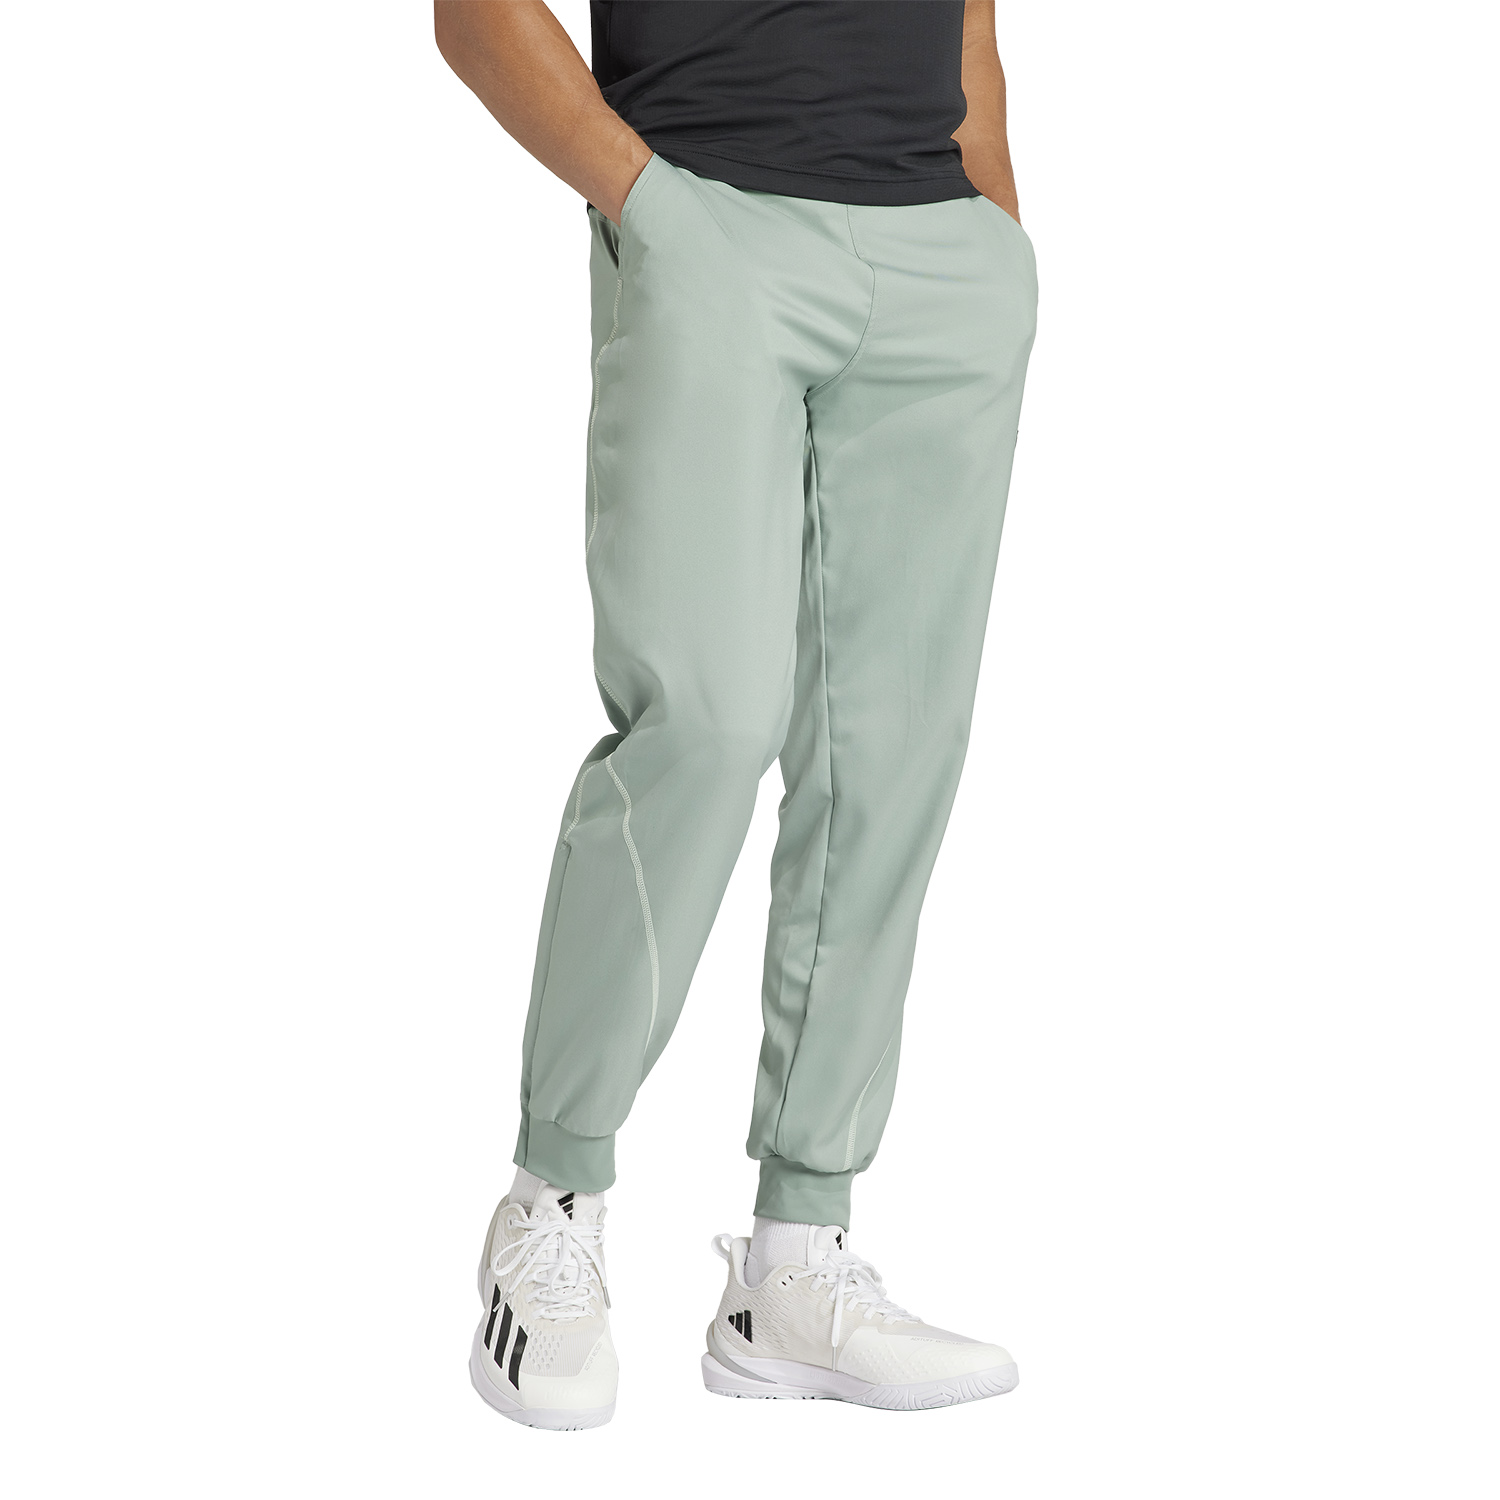 adidas Pro Pantalones - Silver Green